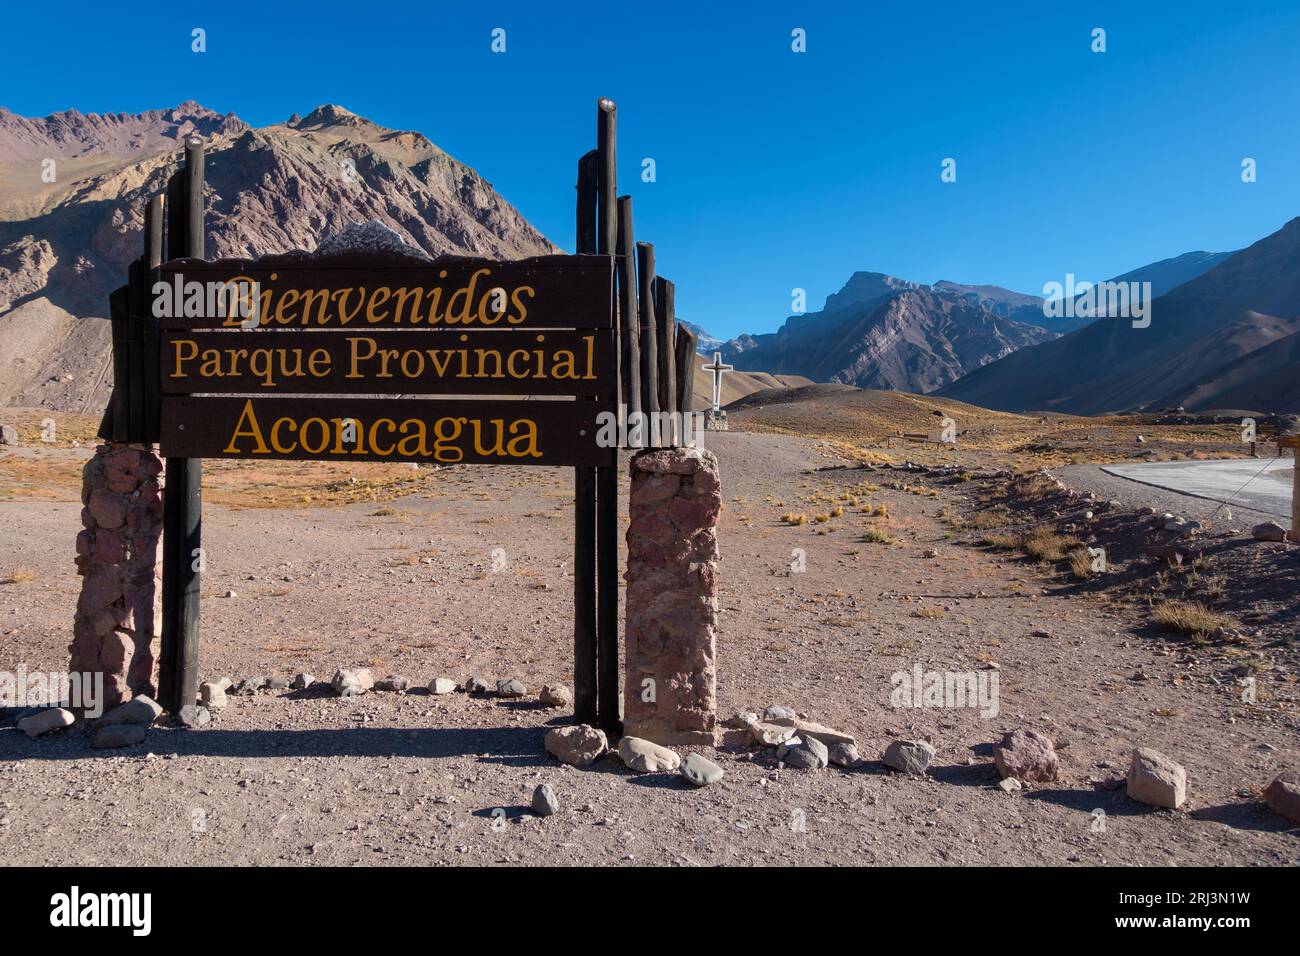 Benvenuto in legno presso l'ingresso al Parco Provinciale del Monte Aconcagua. Vista panoramica, catena montuosa delle Ande, Argentina Foto Stock